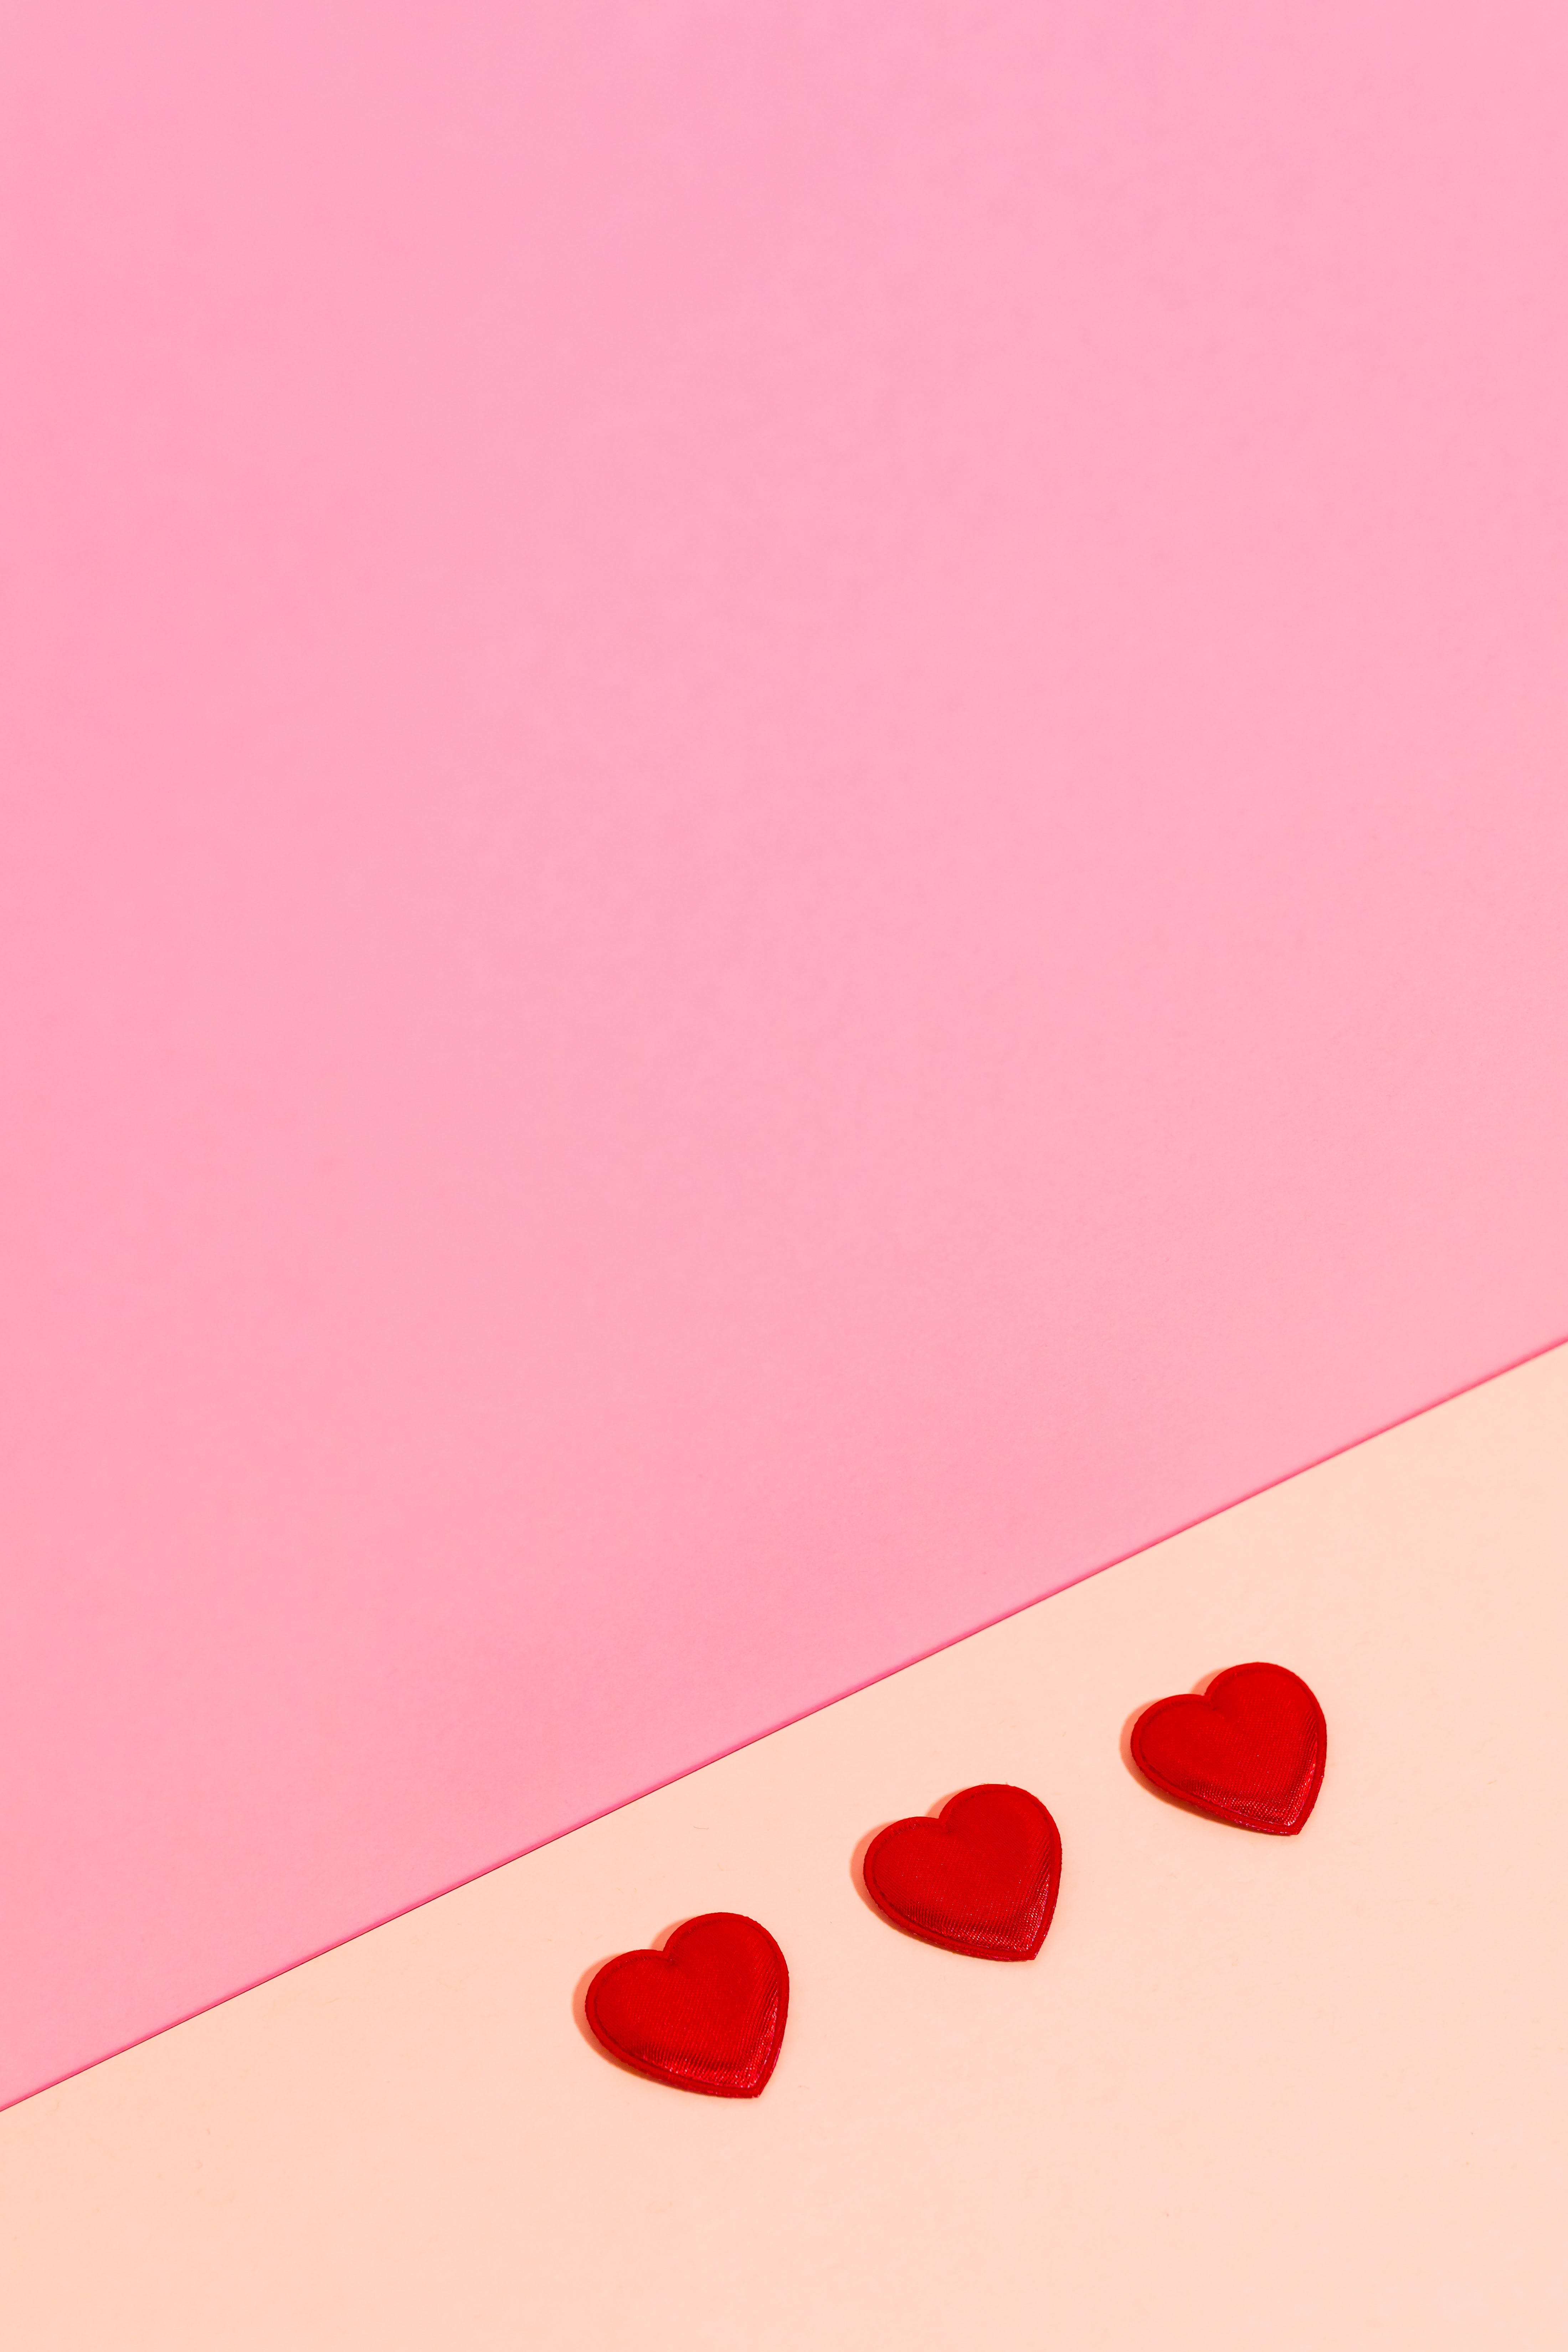  Herz Hintergrundbild 4399x6598. Kostenloses Foto zum Thema: design, herz, hintergrund, kunst, liebe, pink, romantik, studio, valentin, wallpaper